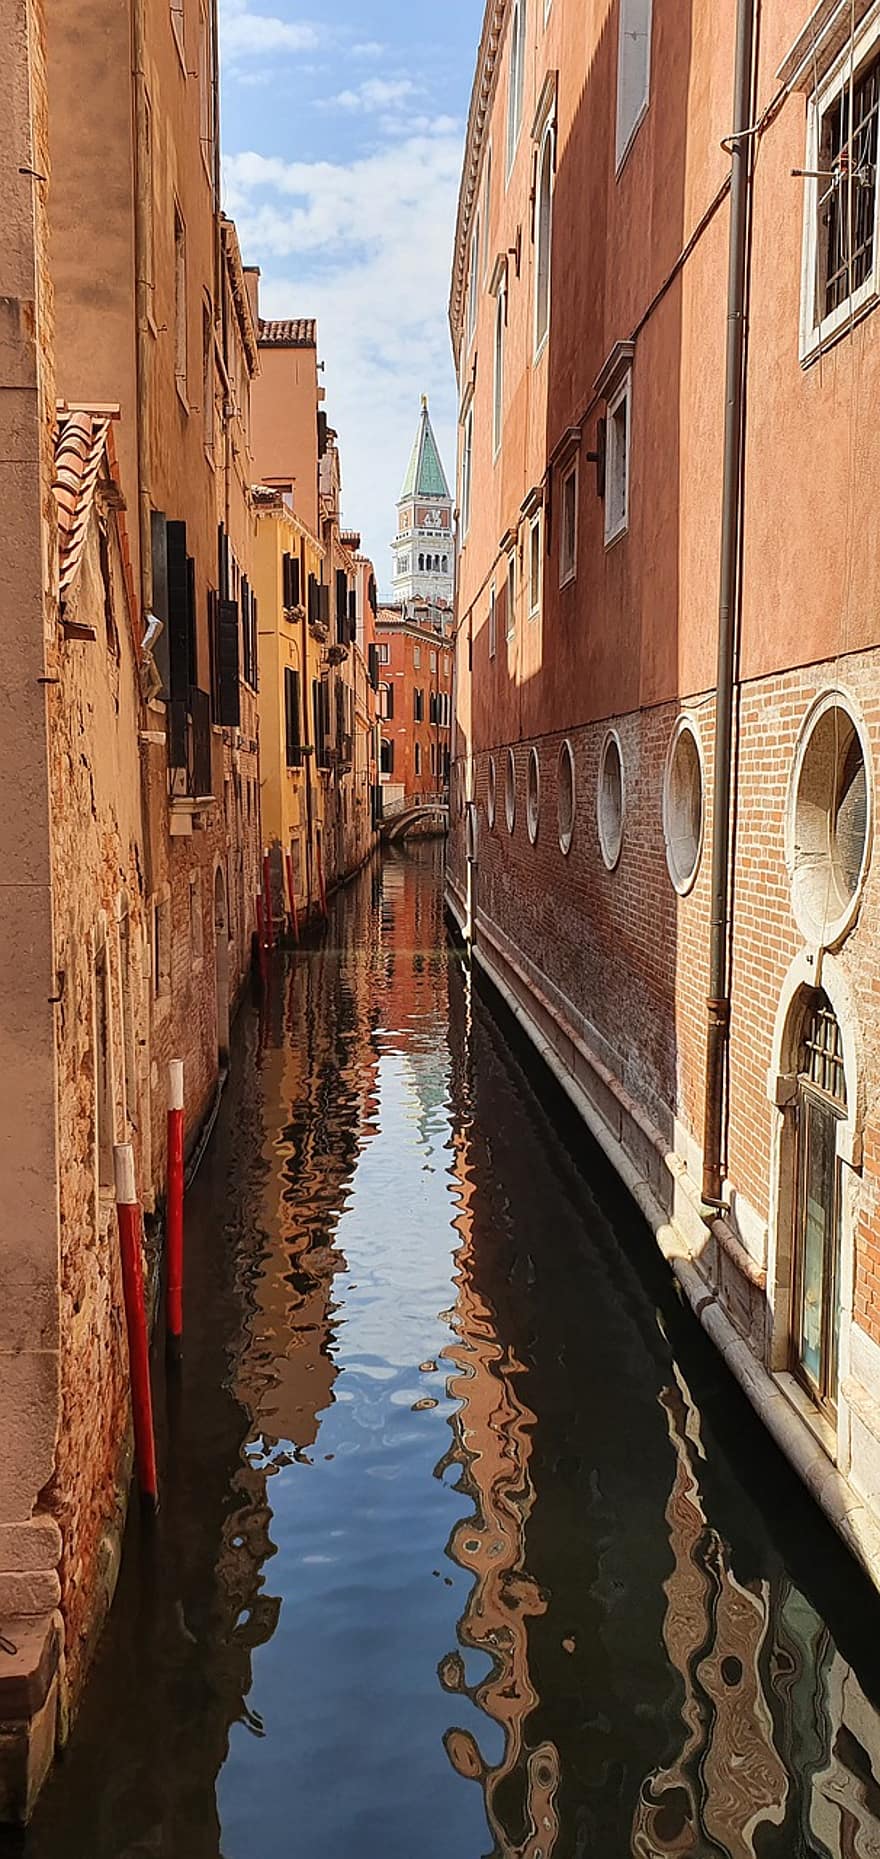 Benátky, budov, kanál, voda, vodních cestách, odraz, historický, Pohled, městský, město